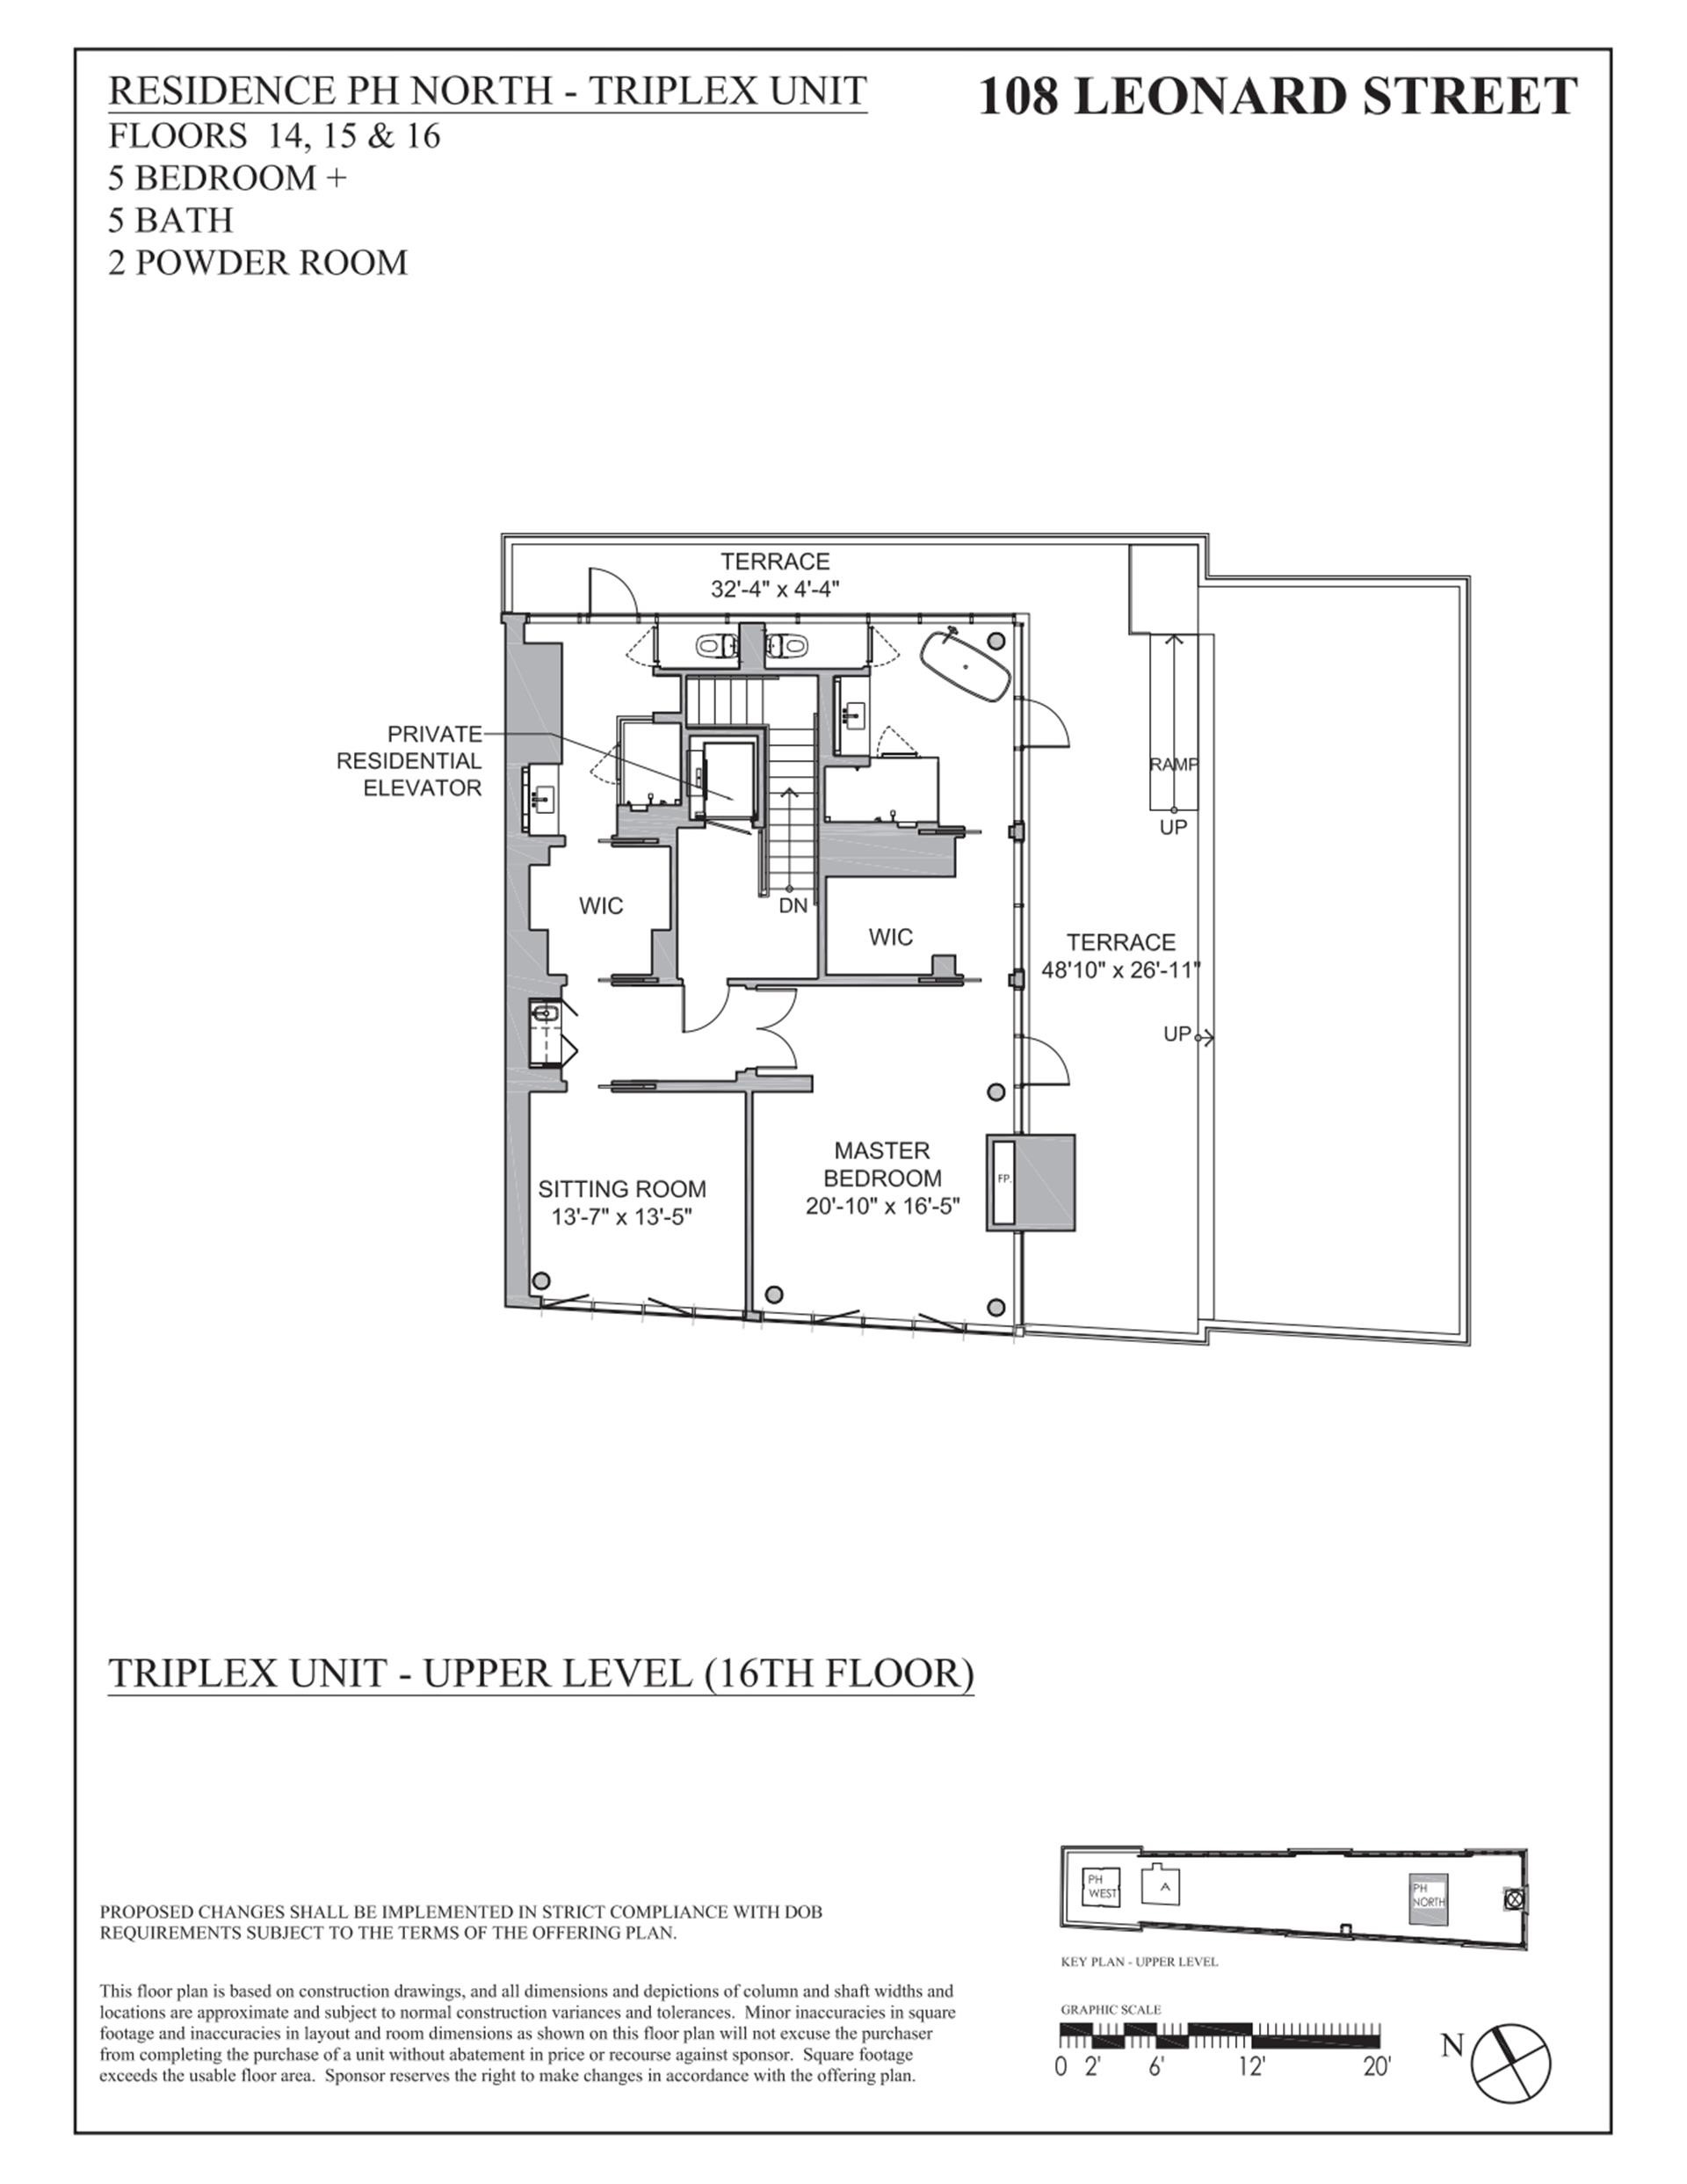 3. Condominiums for Sale at 108 LEONARD ST, PHN TriBeCa, New York, NY 10013